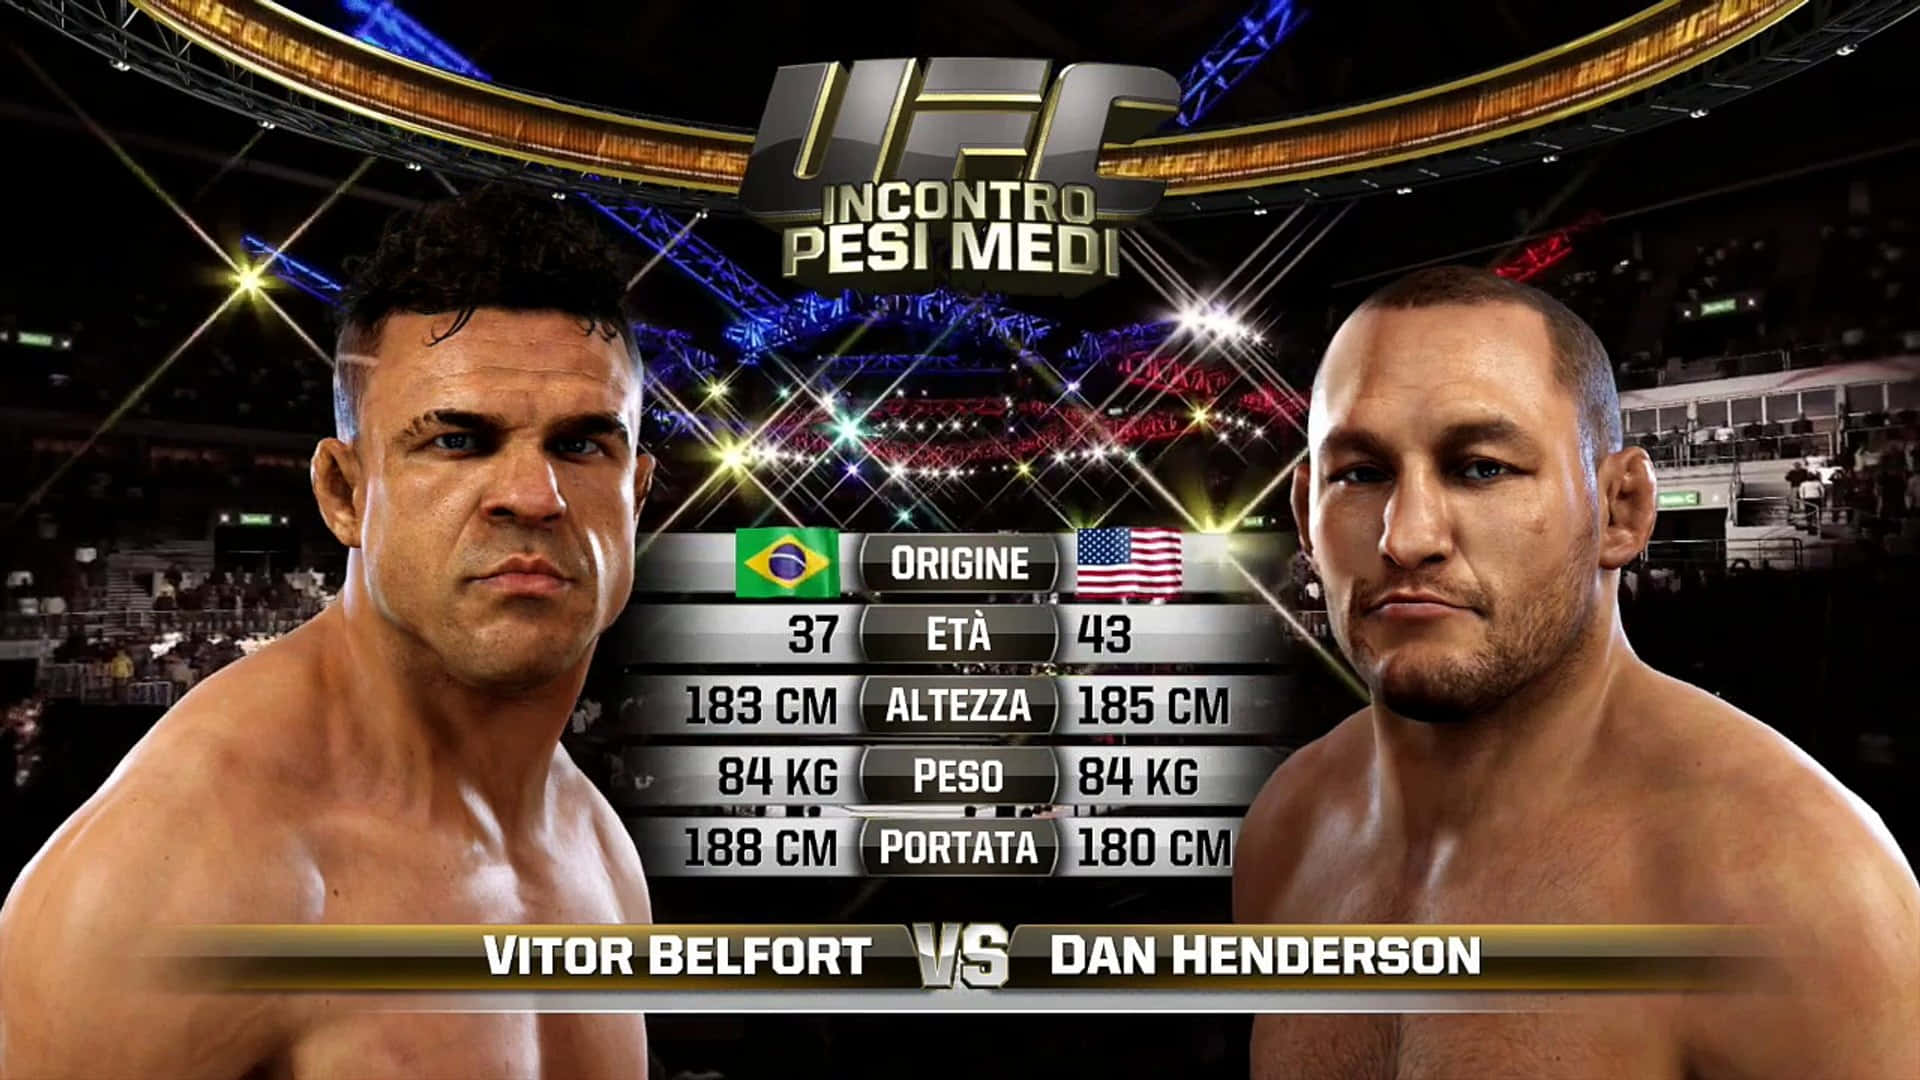 Ufcfight Night Vitor Belfort Gegen Dan Henderson Xbox Wallpaper